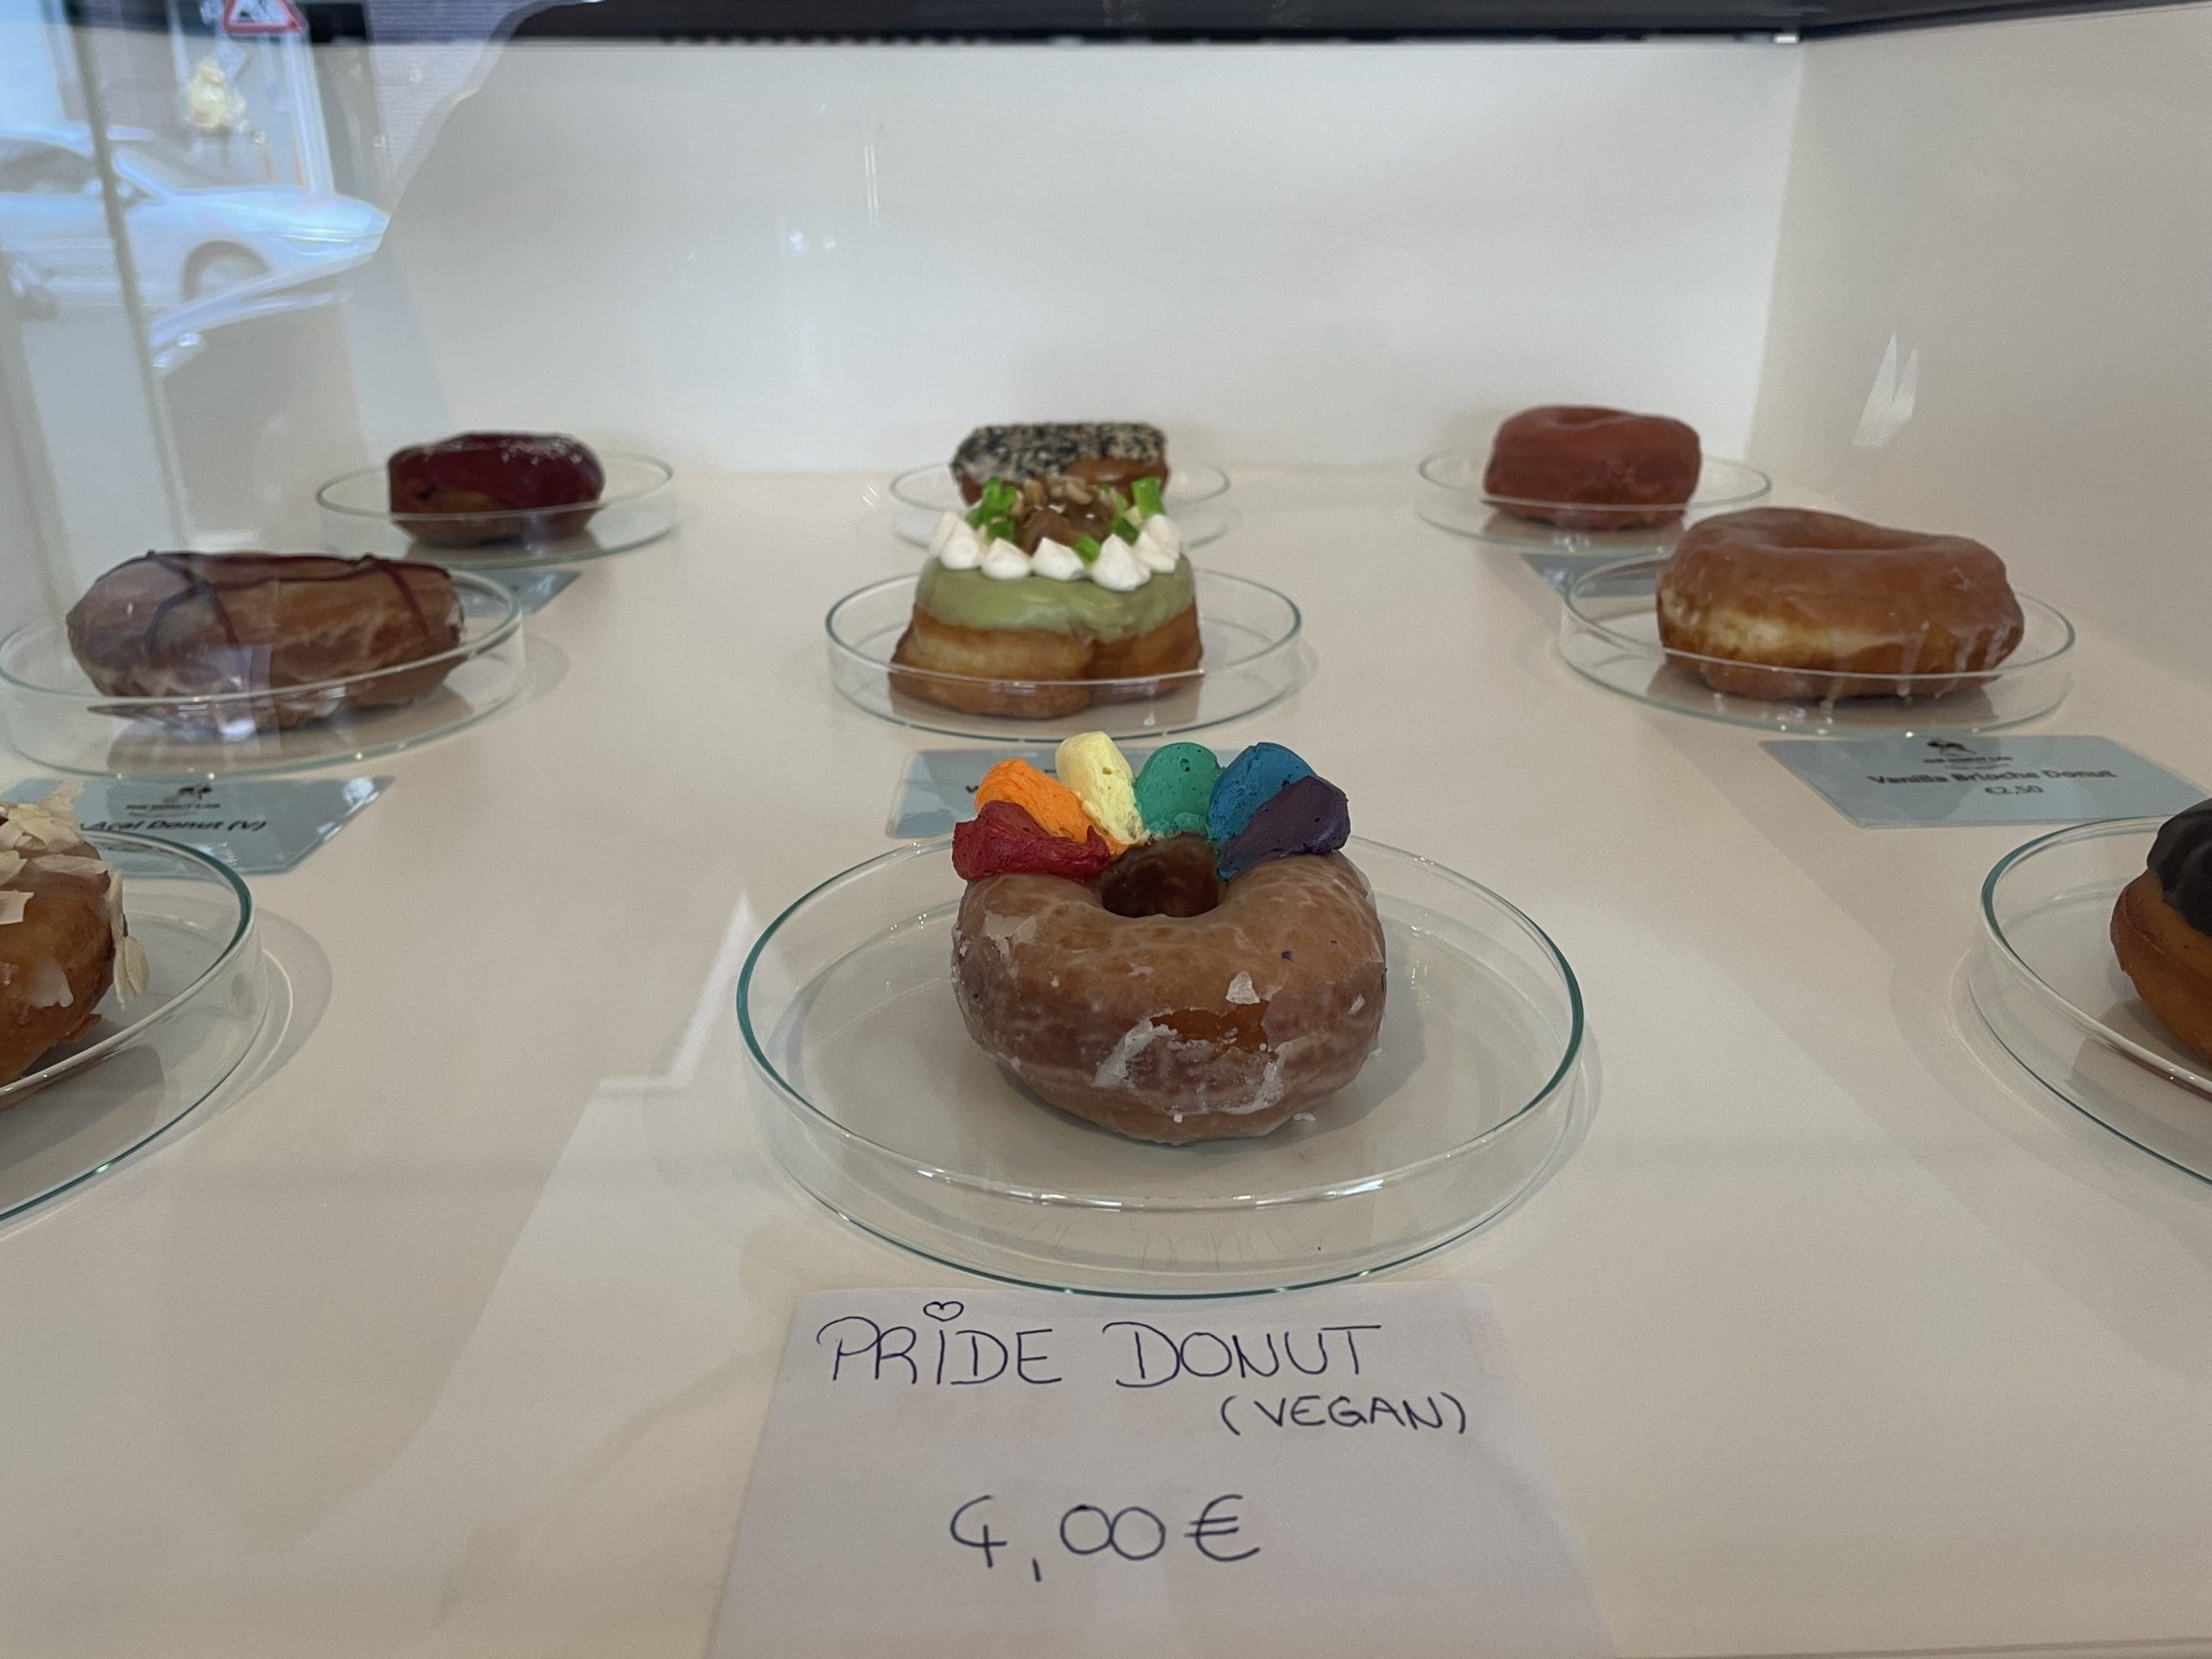 Passend zum Pride Month. 50 Cent werden pro verkauftem Pride Donut an das QZM gespendet. © Stefanie Maier